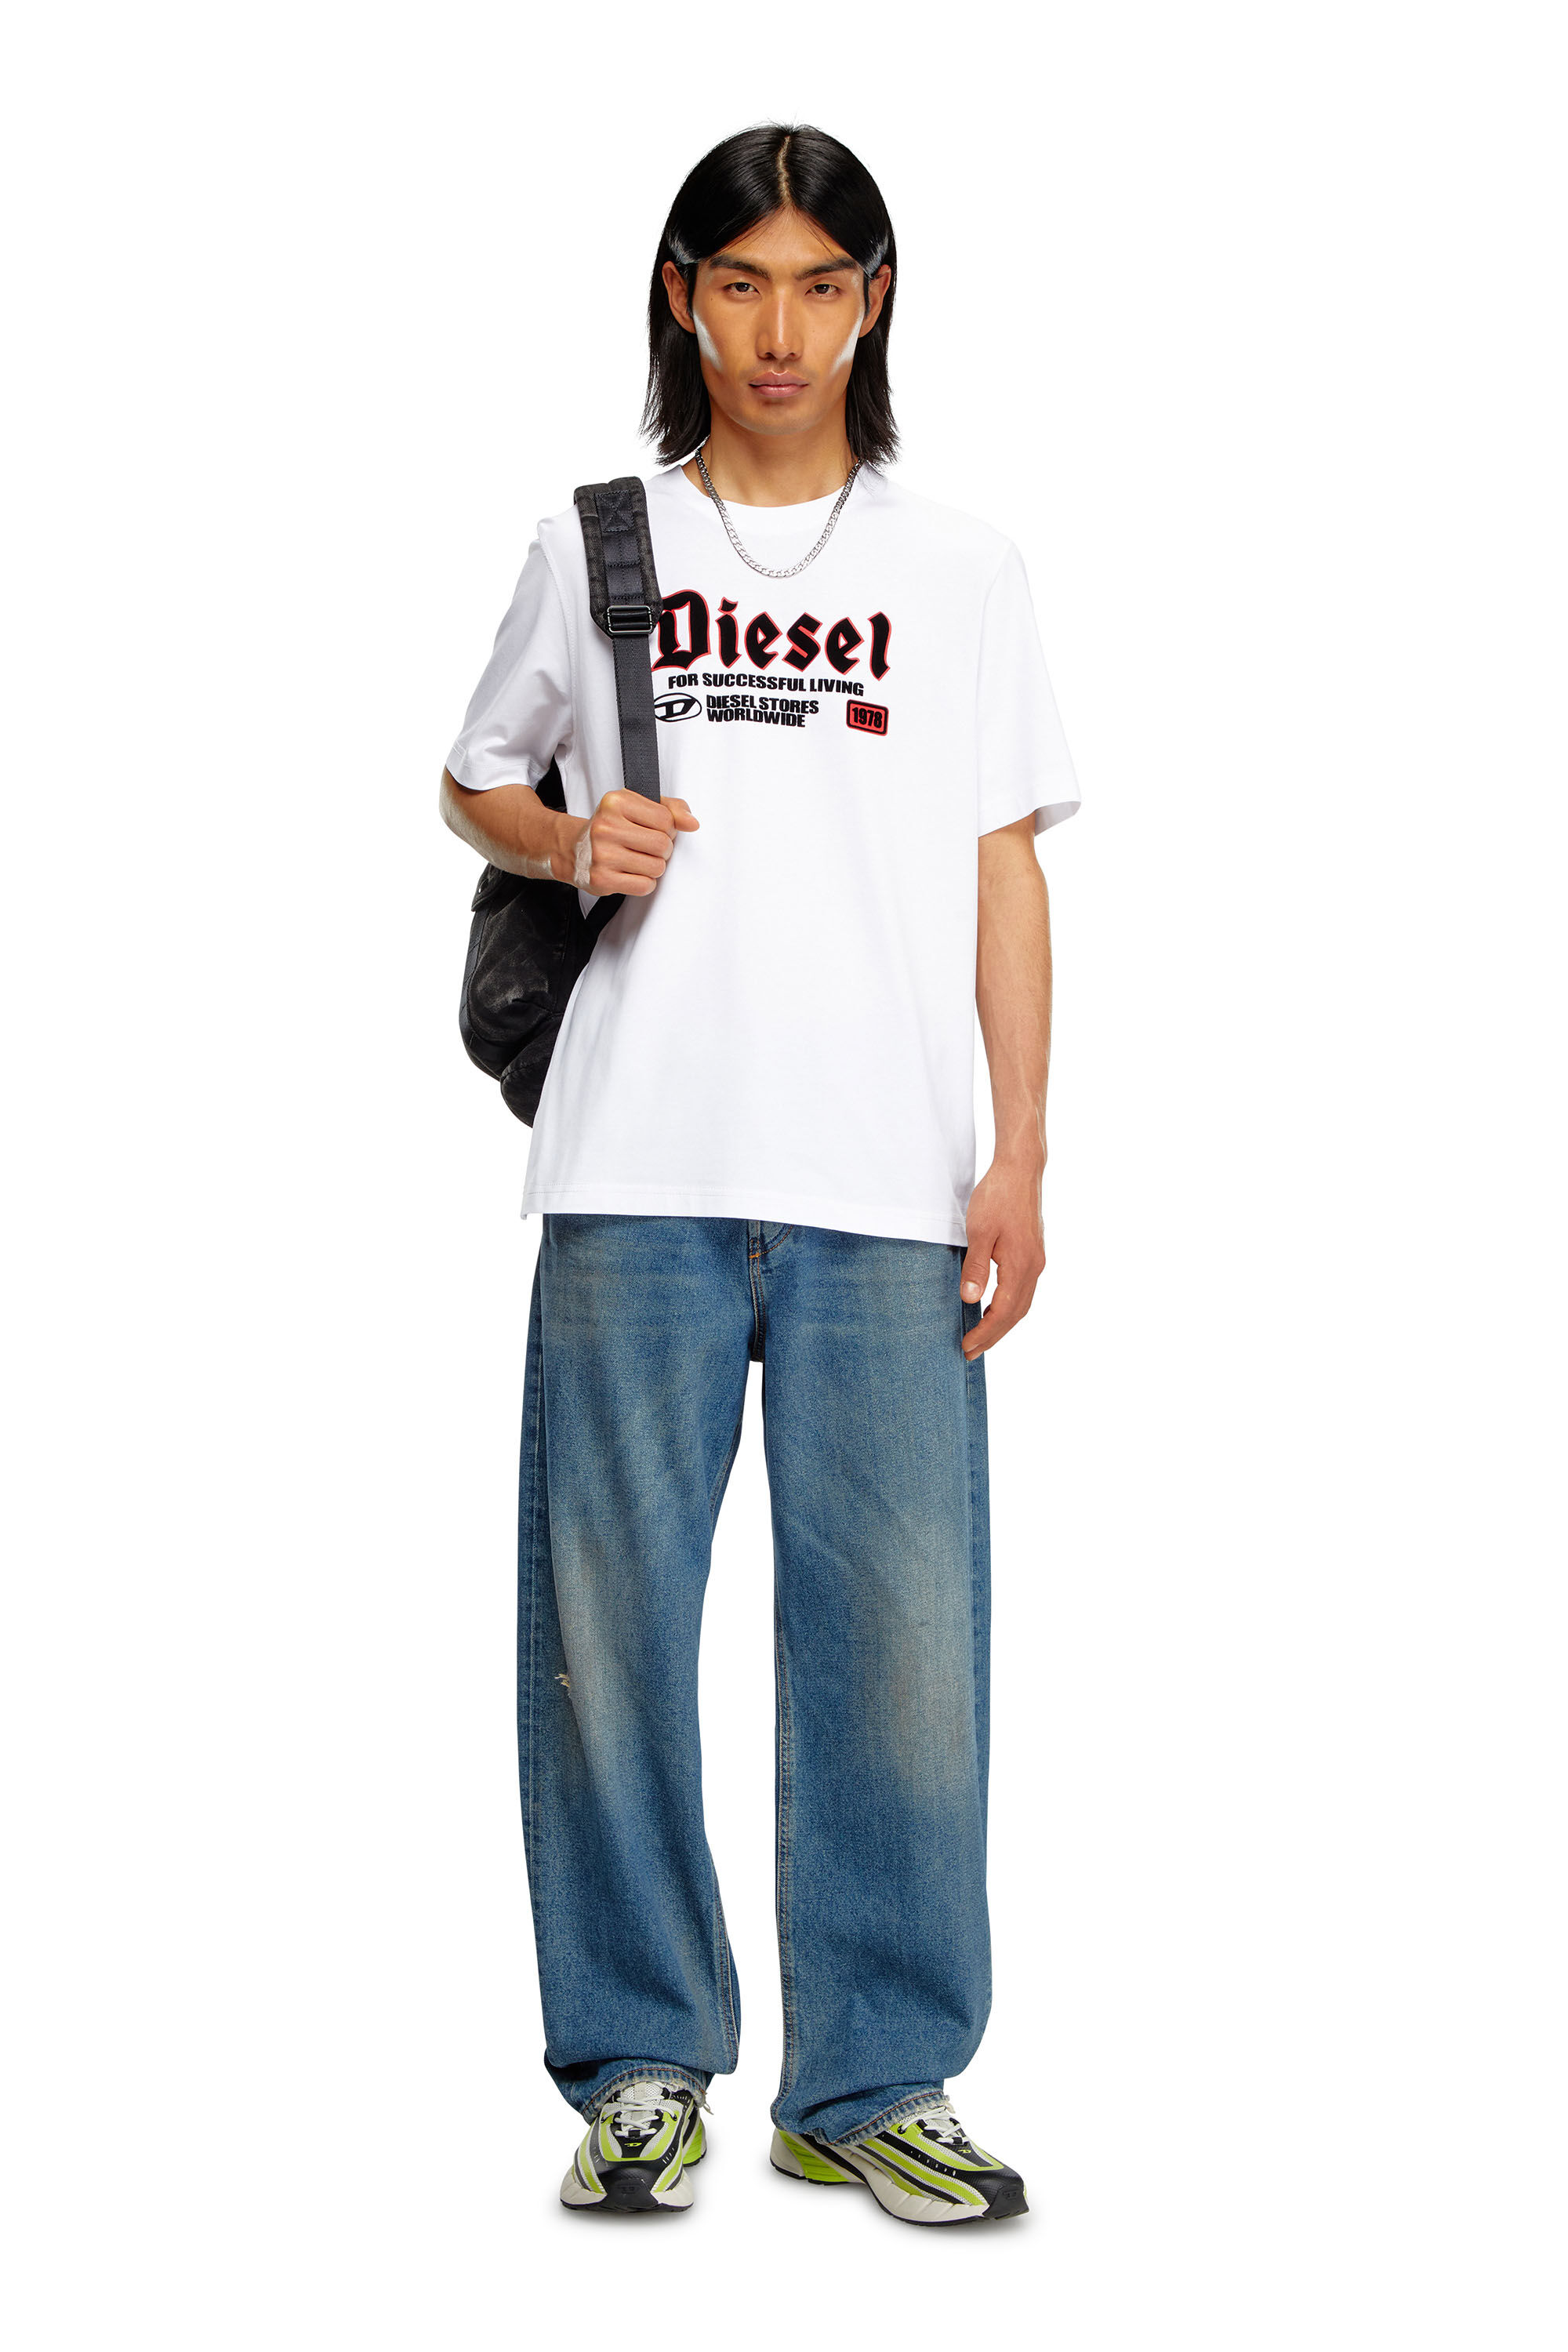 Diesel - T-ADJUST-K1, Homme T-shirt avec imprimé Diesel floqué in Blanc - Image 1